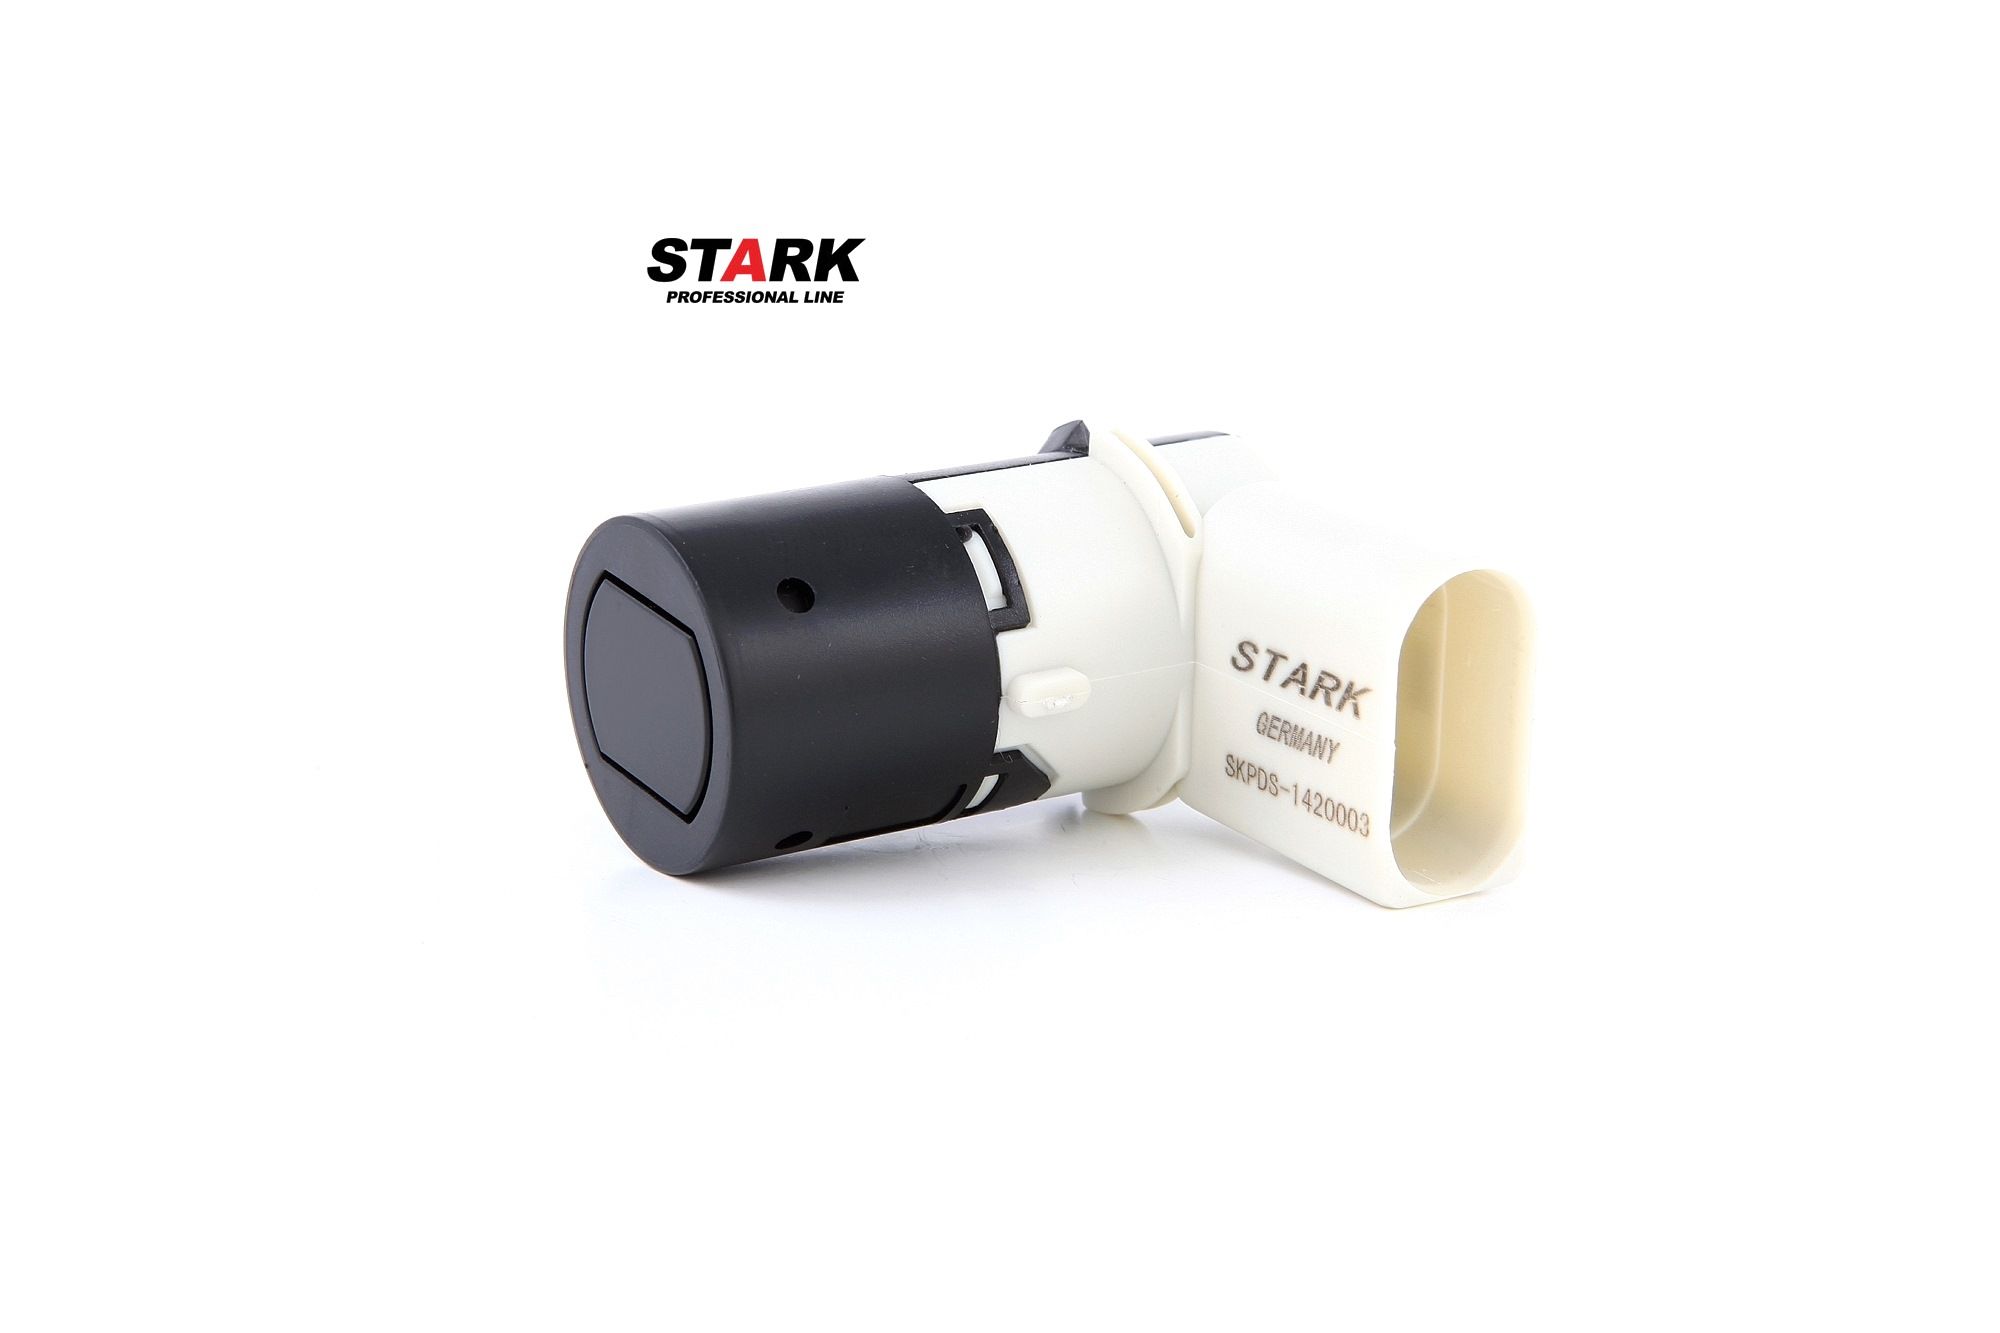 STARK black, Ultrasonic Sensor Reversing sensors SKPDS-1420003 buy